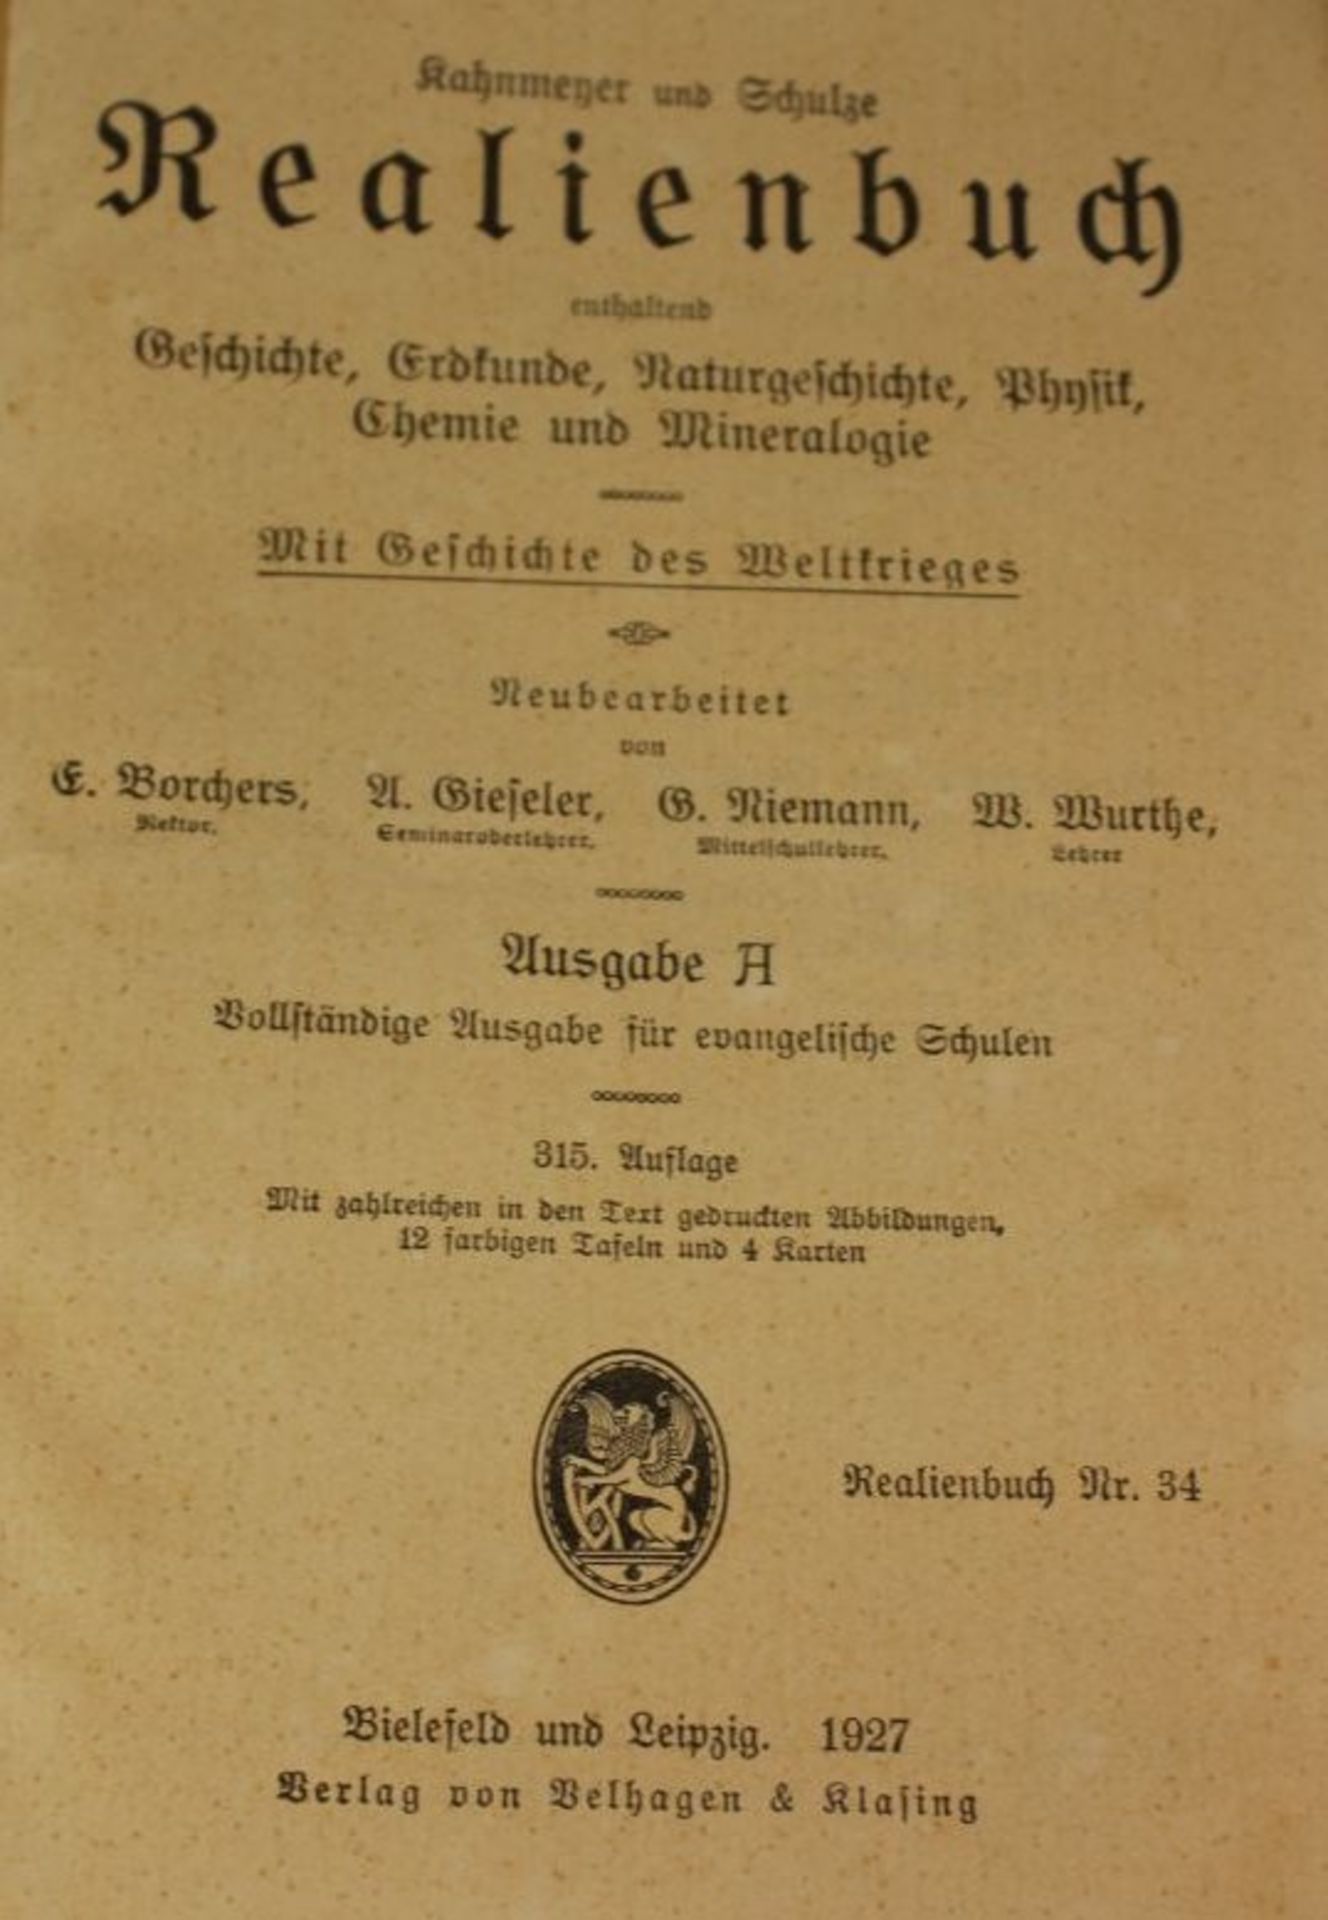 Kahnmeyer / Schulze, Realienbuch, Ausgabe A, 1927.- - -22.61 % buyer's premium on the hammer - Bild 2 aus 2